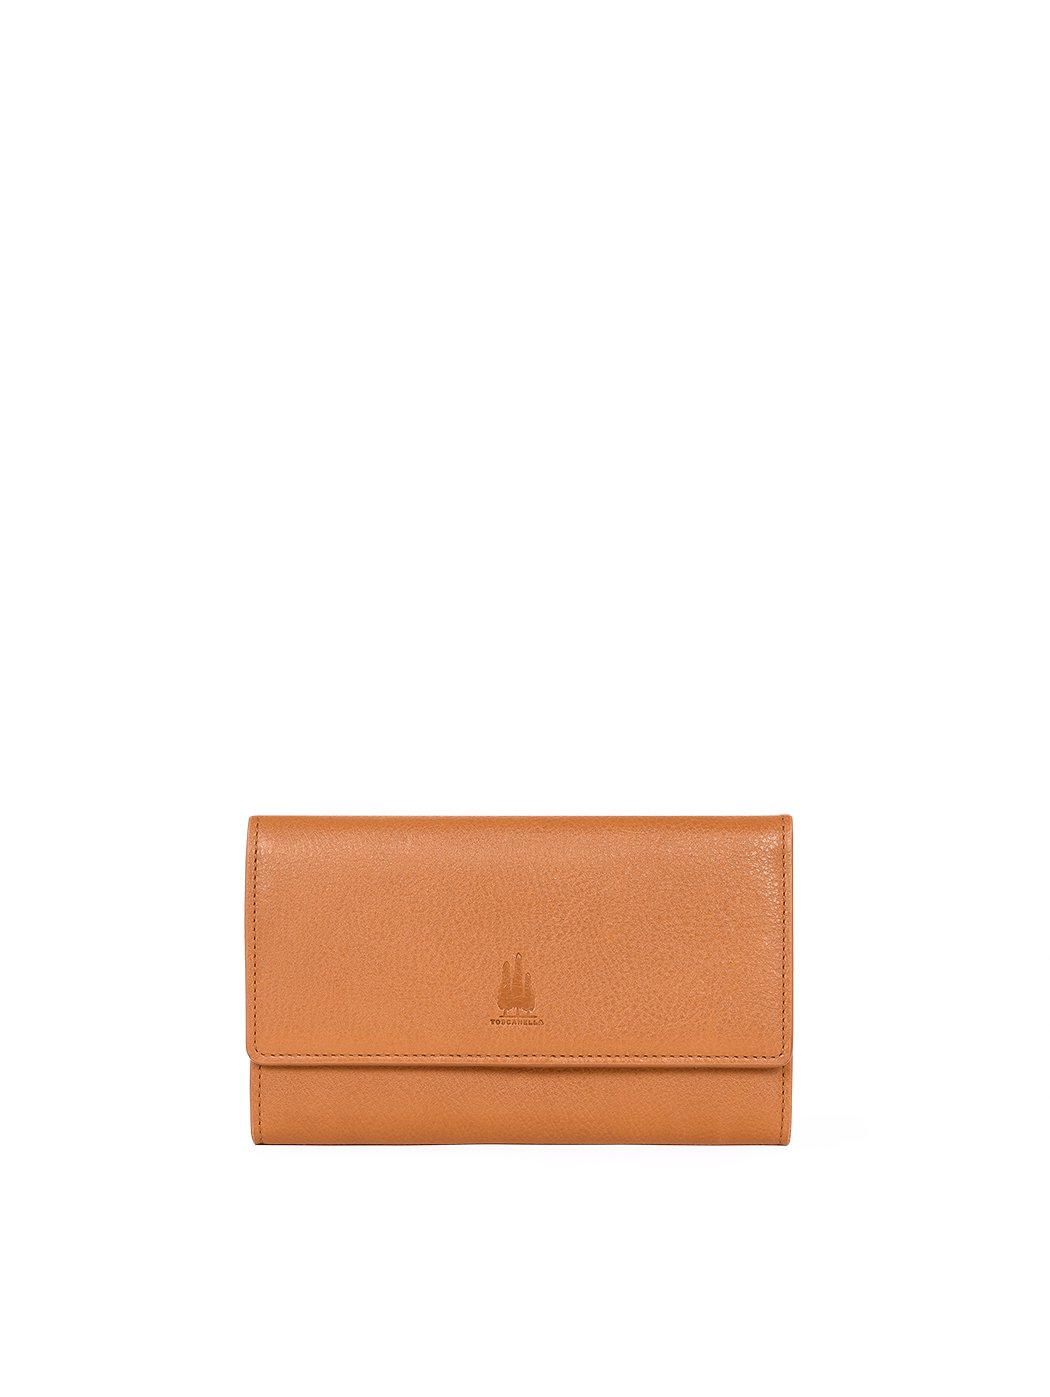 Tri-fold Leather Wallet Clutch Tobacco